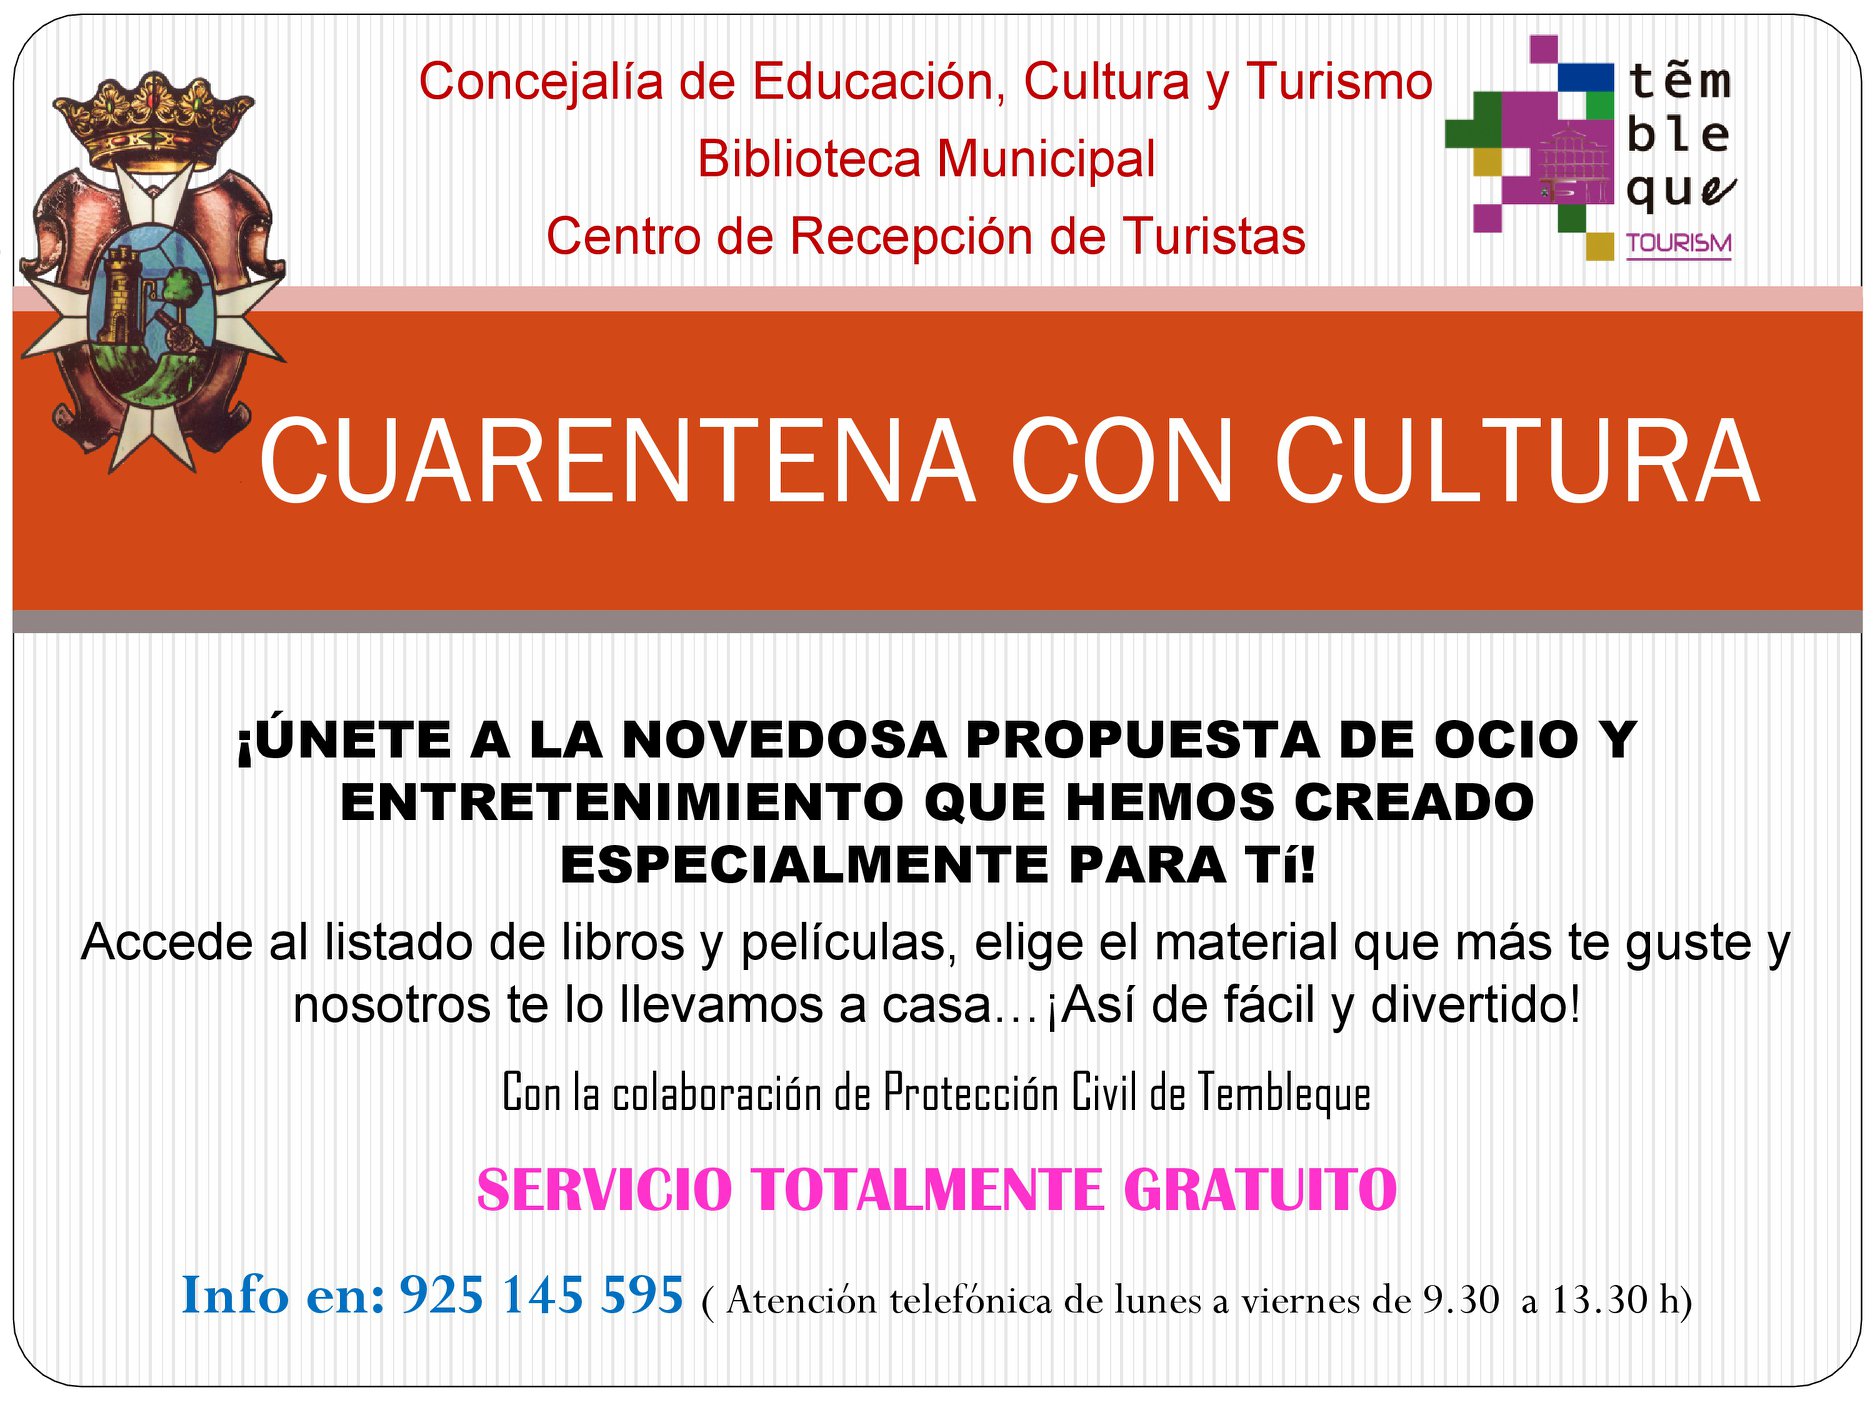 Campaña cuarentena con Cultura del Ayuntamiento de Tembleque